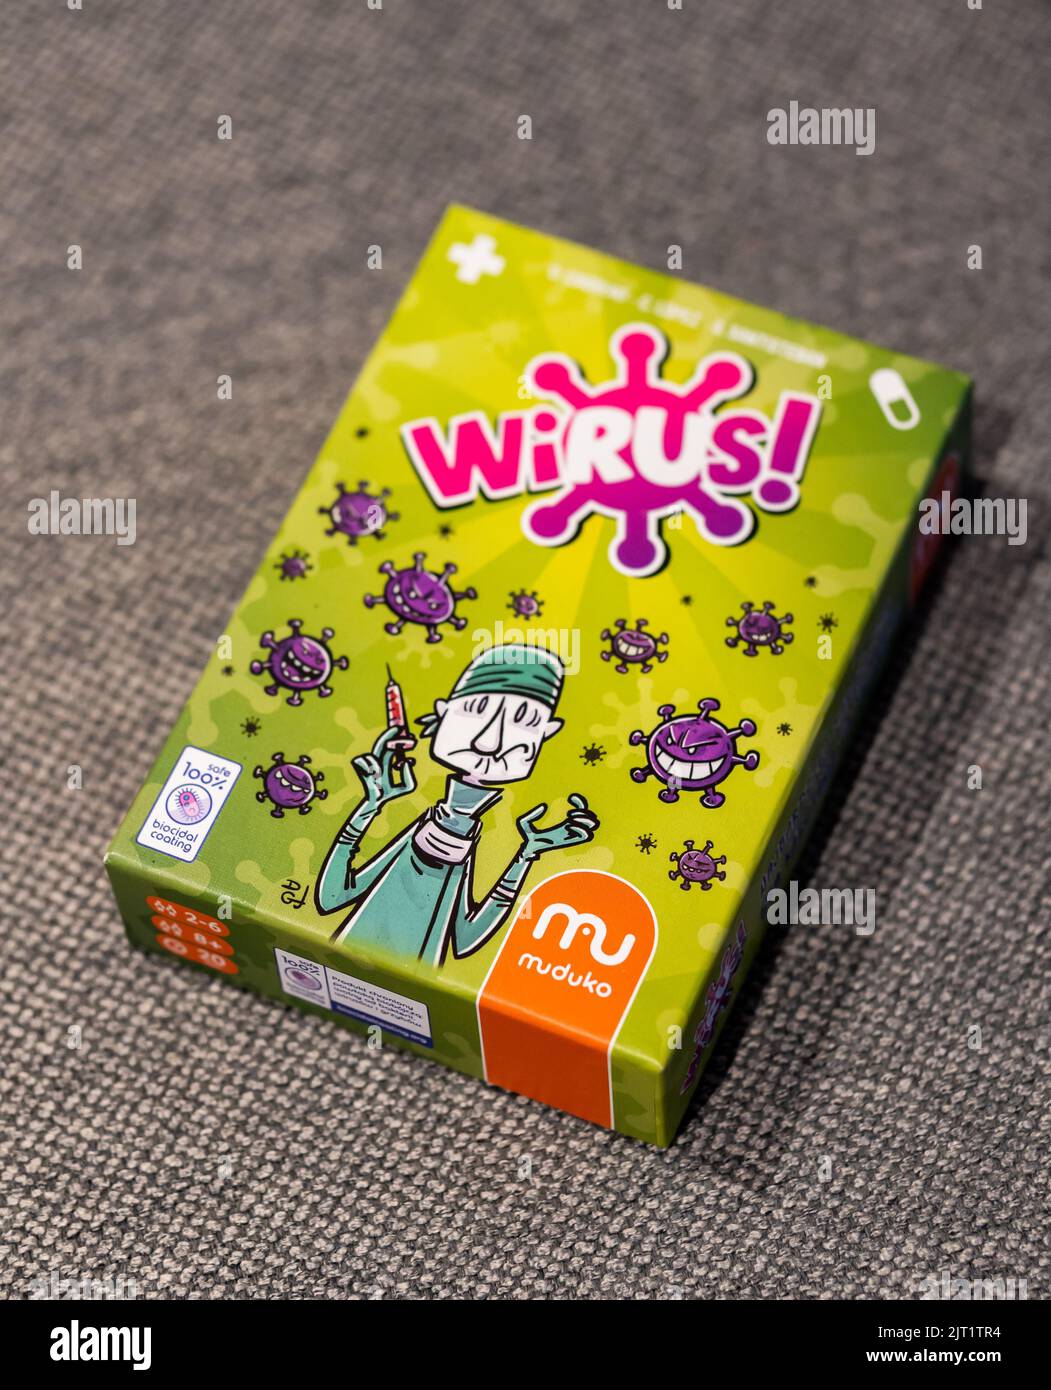 Un jeu de cartes de marque Muduka appelé Wirus en polonais dans une boîte sur une table Banque D'Images